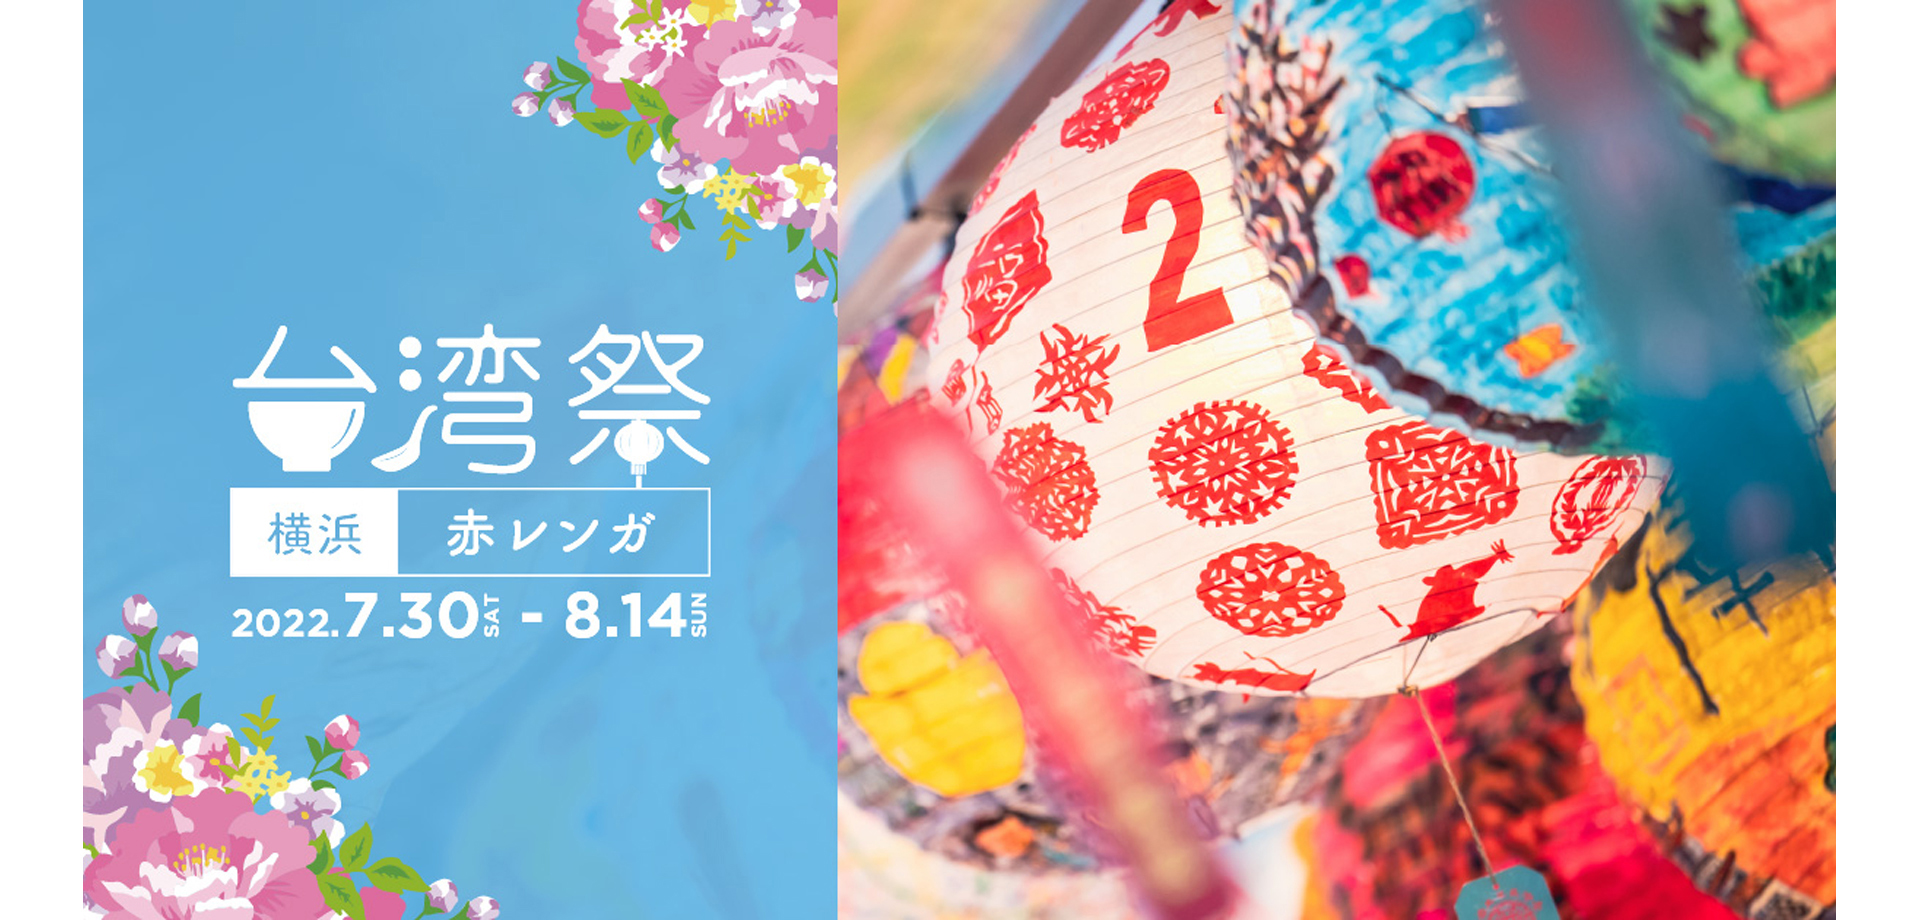 台湾祭 in 横浜赤レンガ 2022